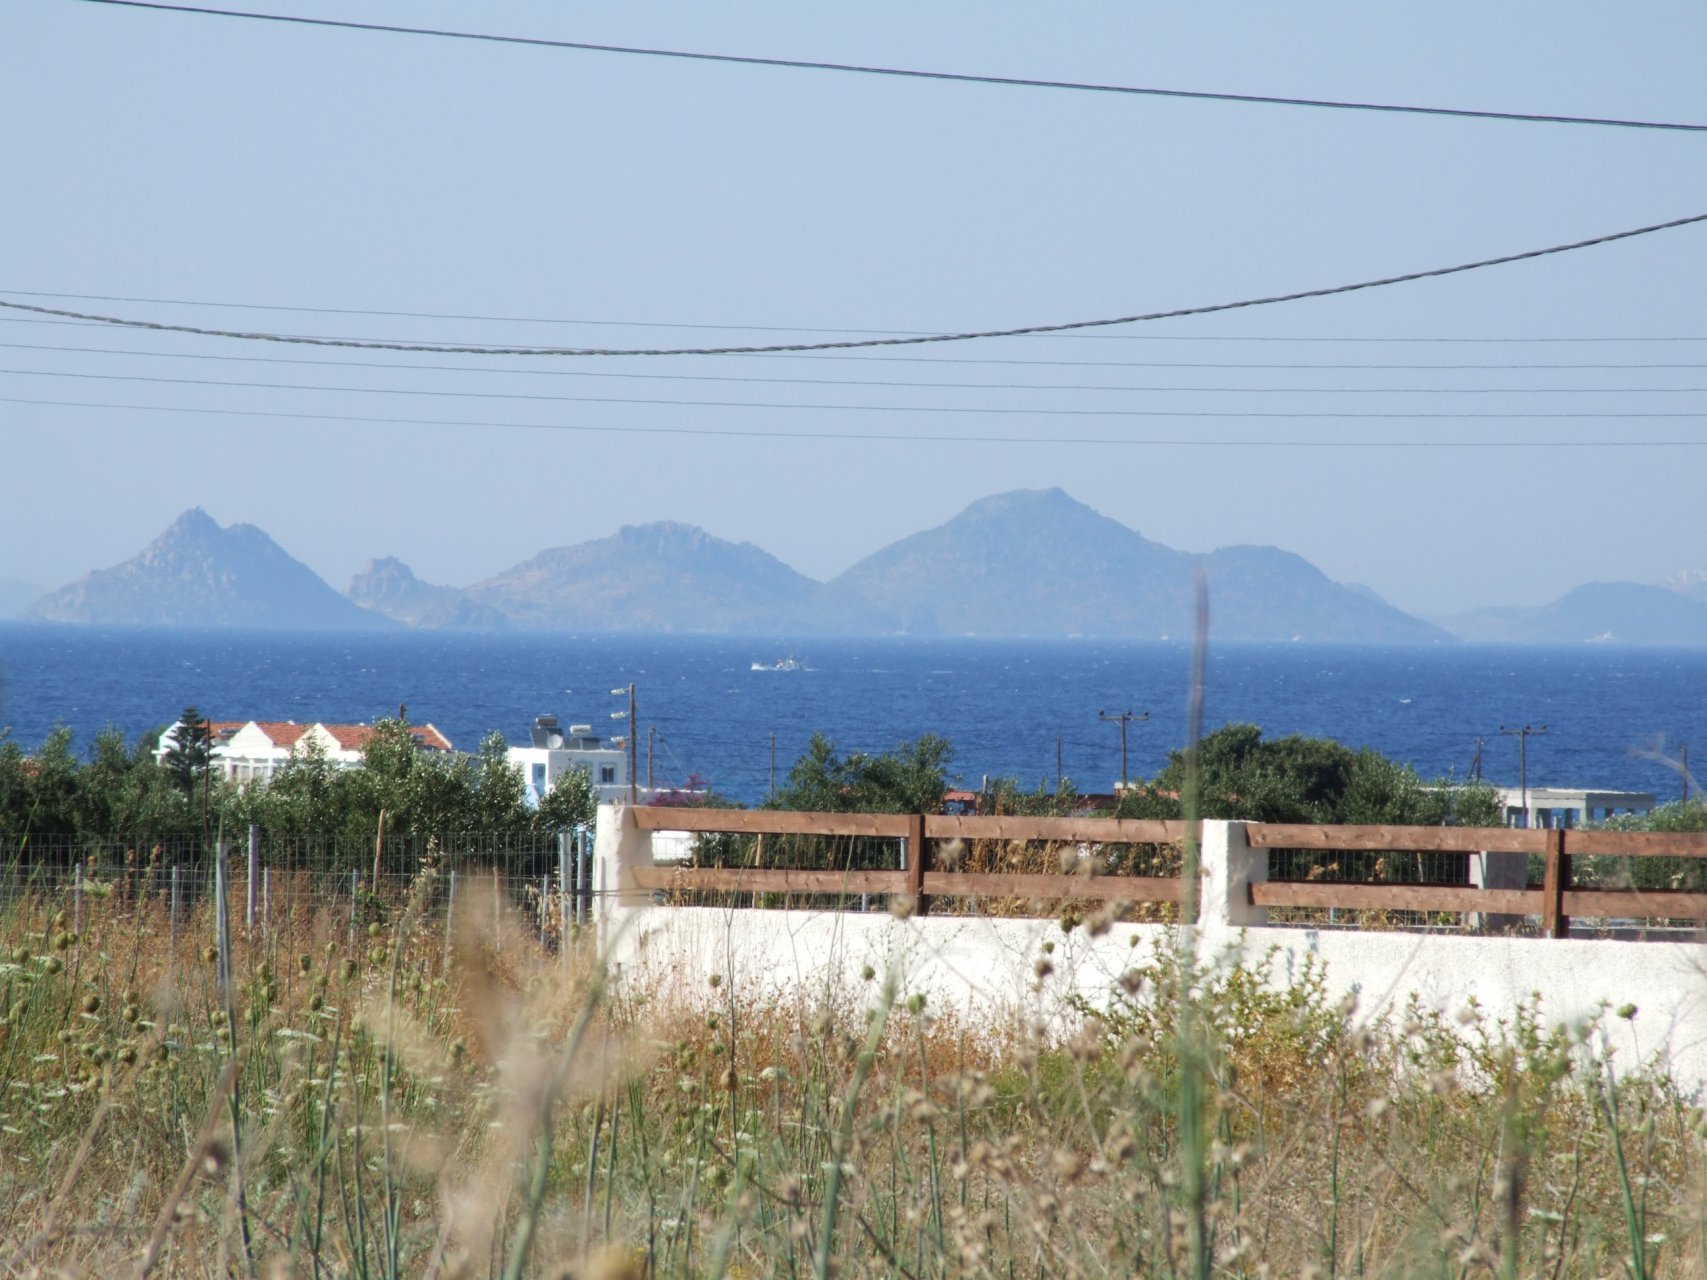 Okolice miasteczka Zipari, w tle wyspa Kalimnos